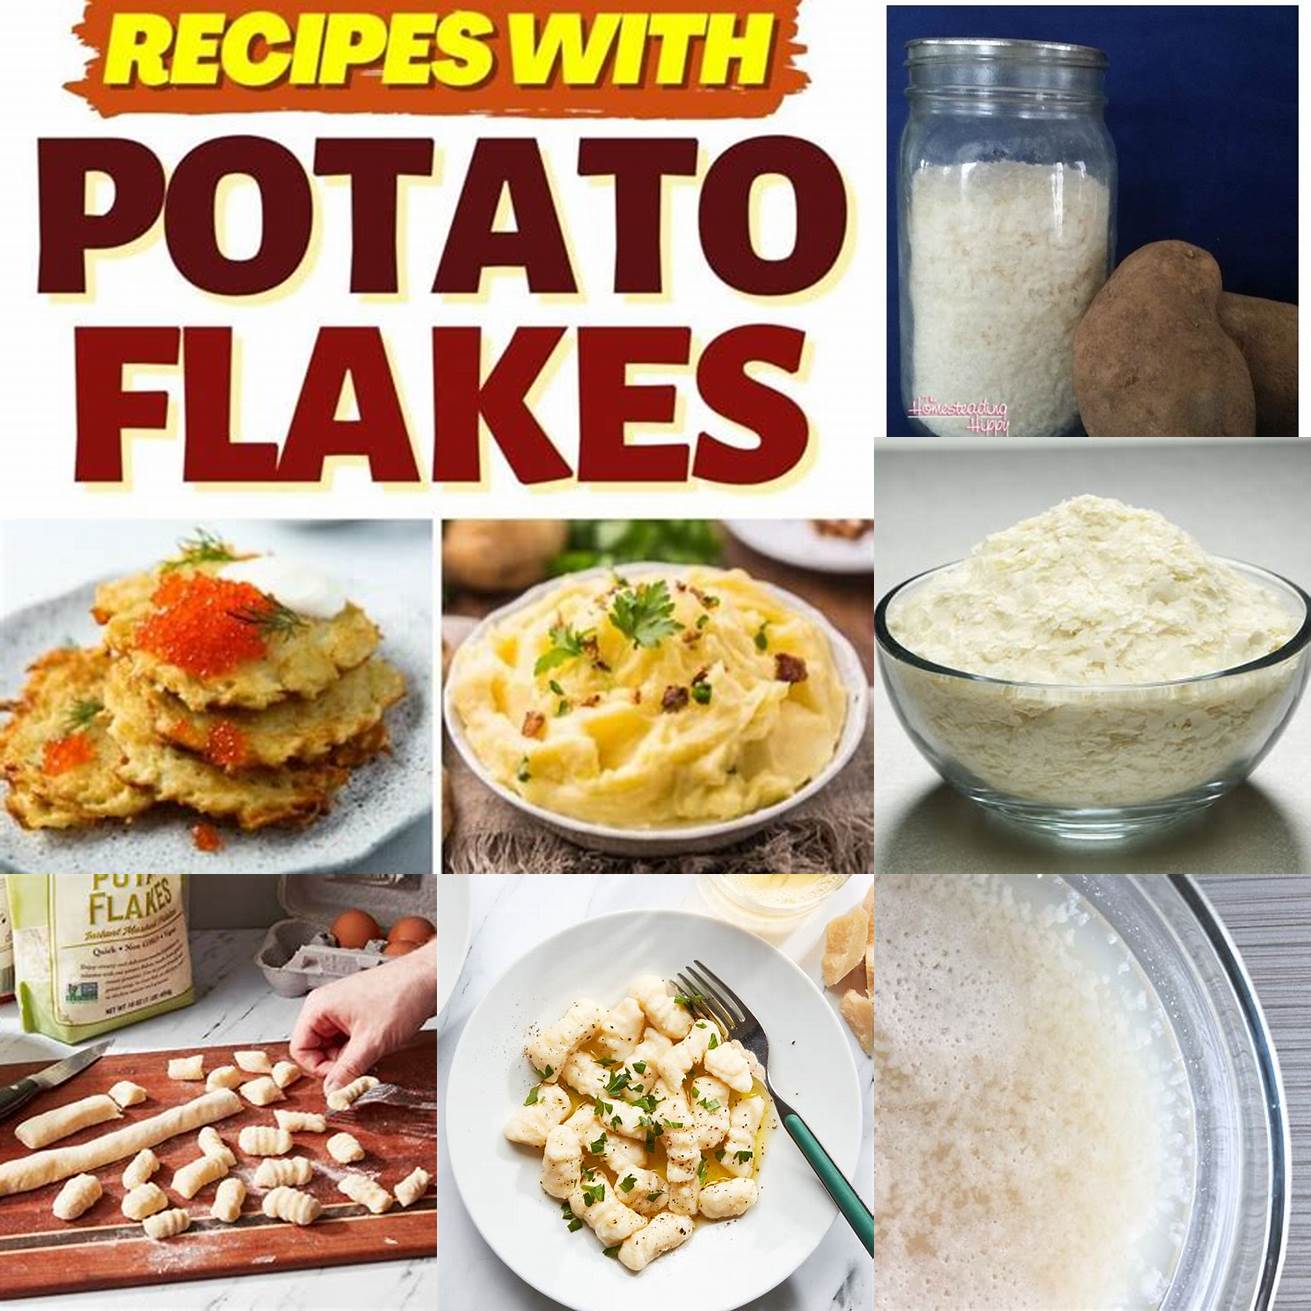 Potato flakes